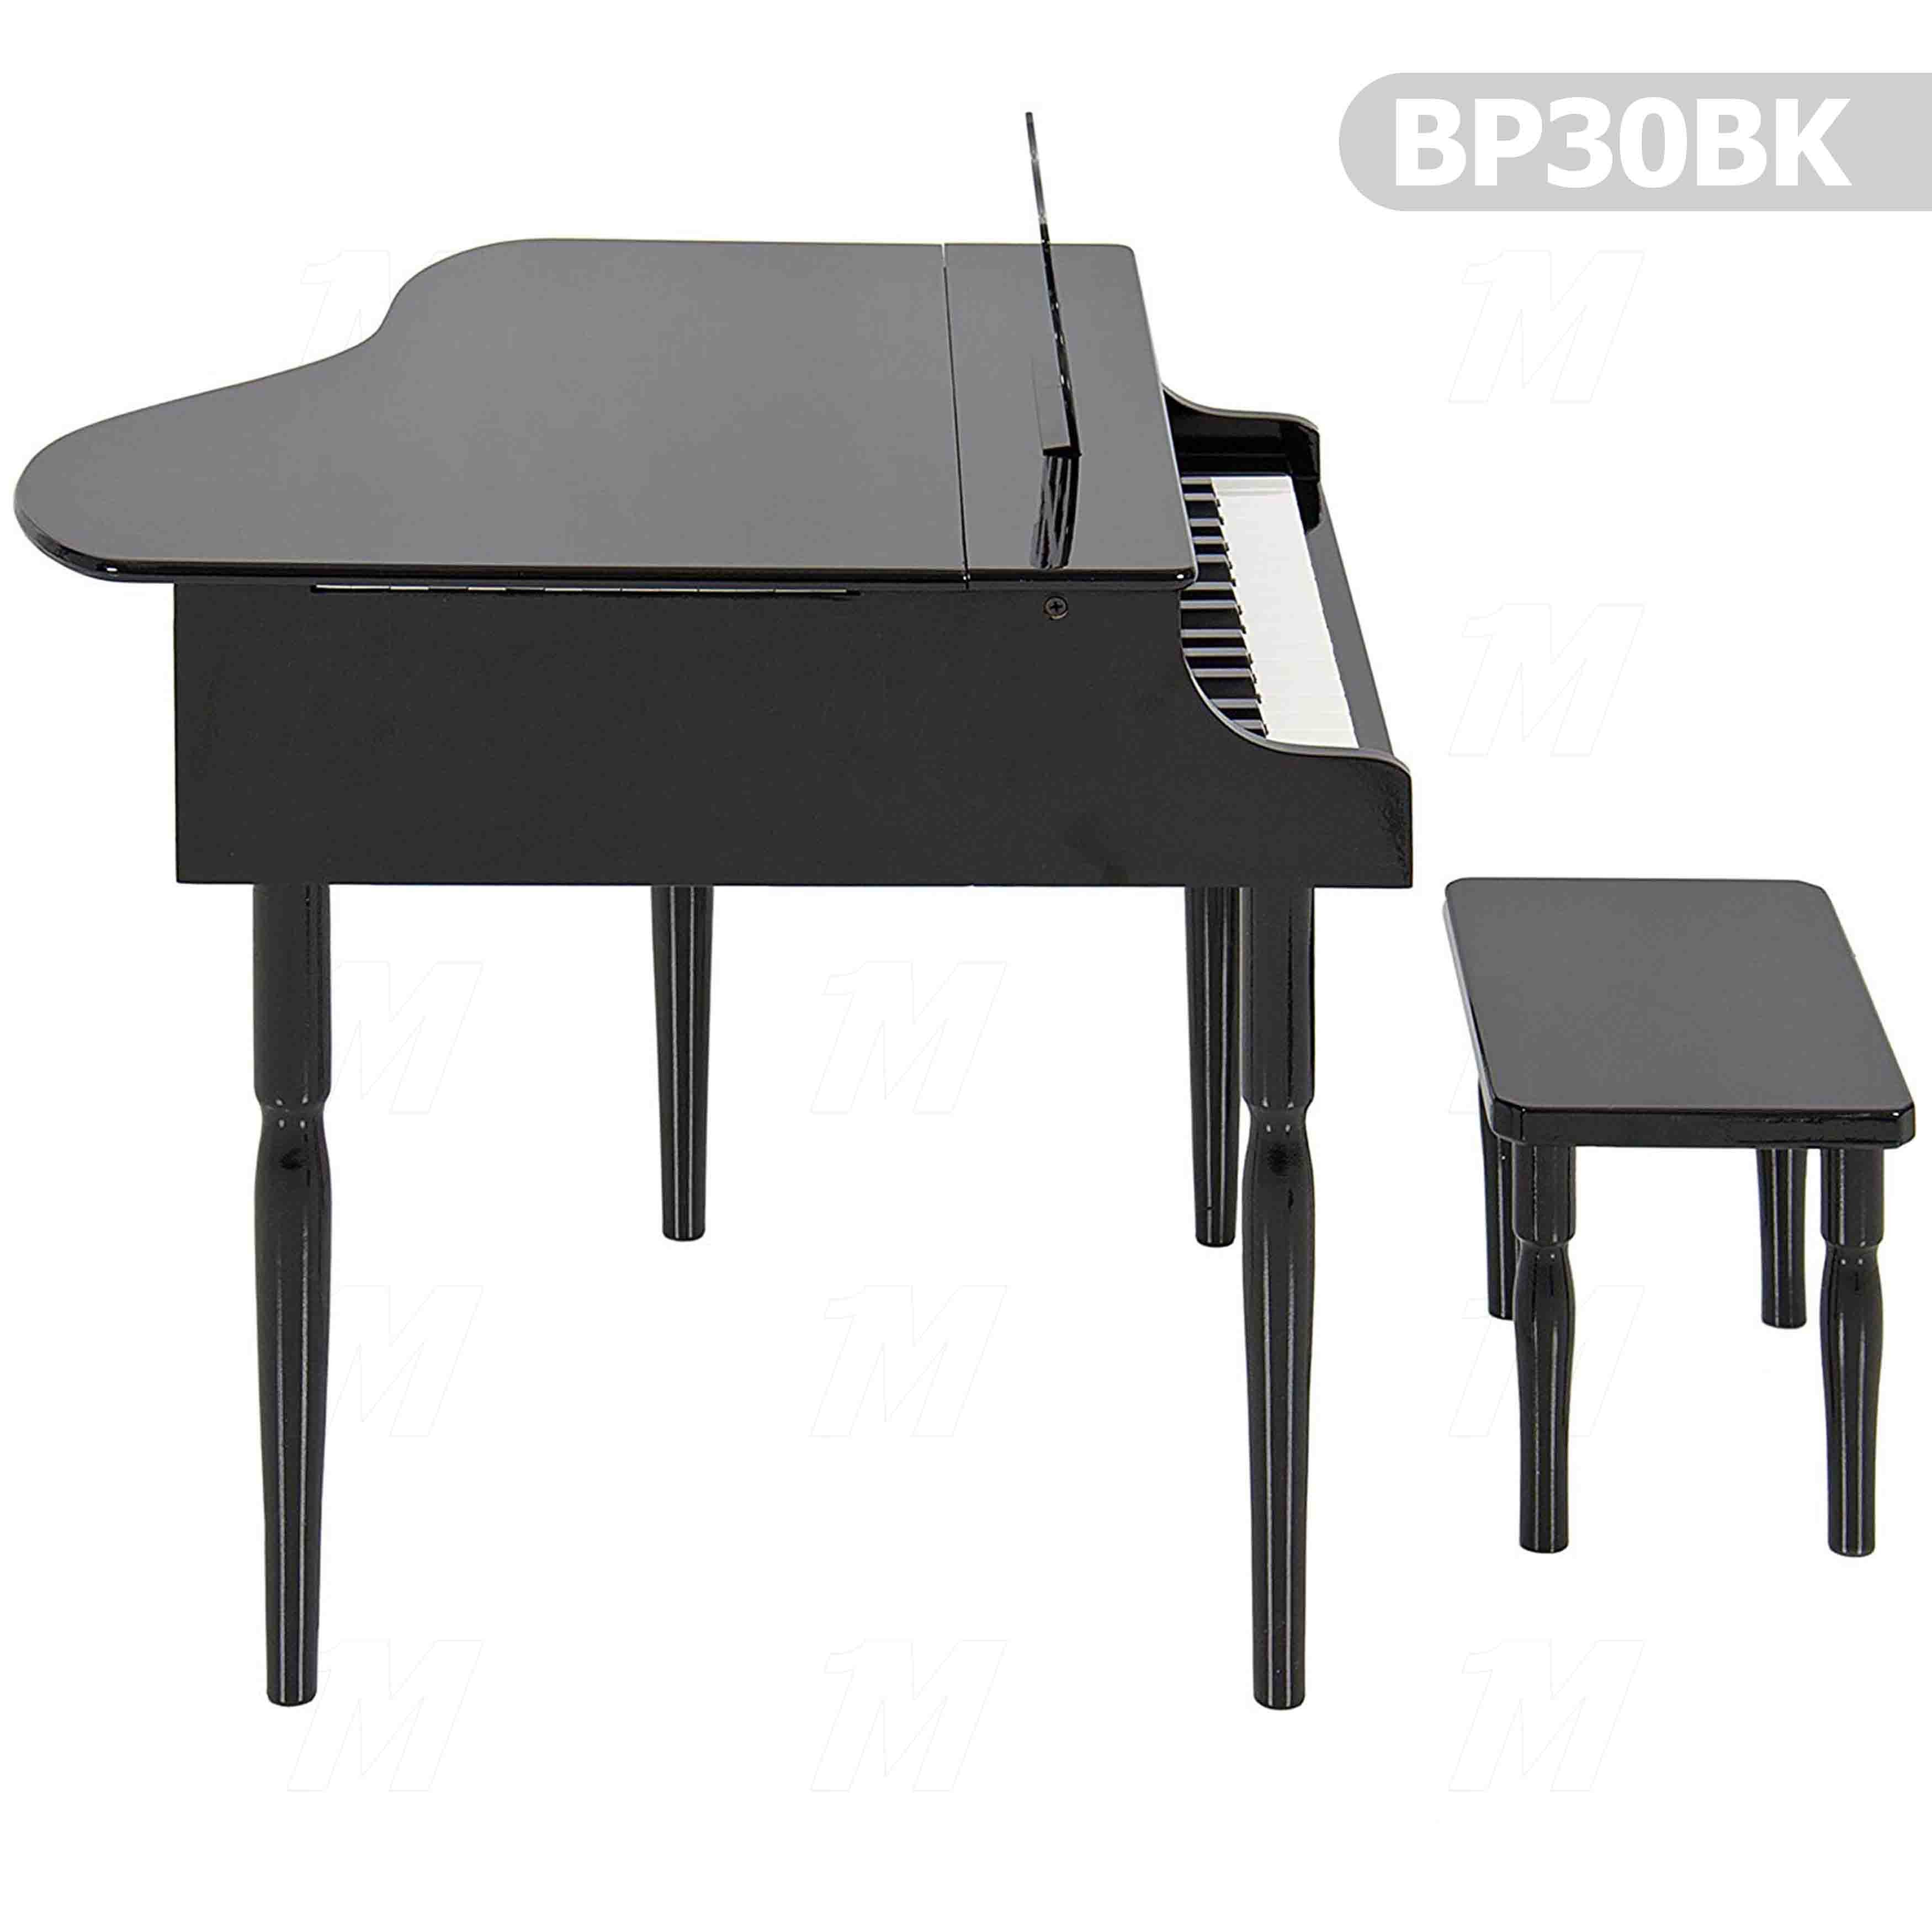 Children's Wooden Piano BP30BK